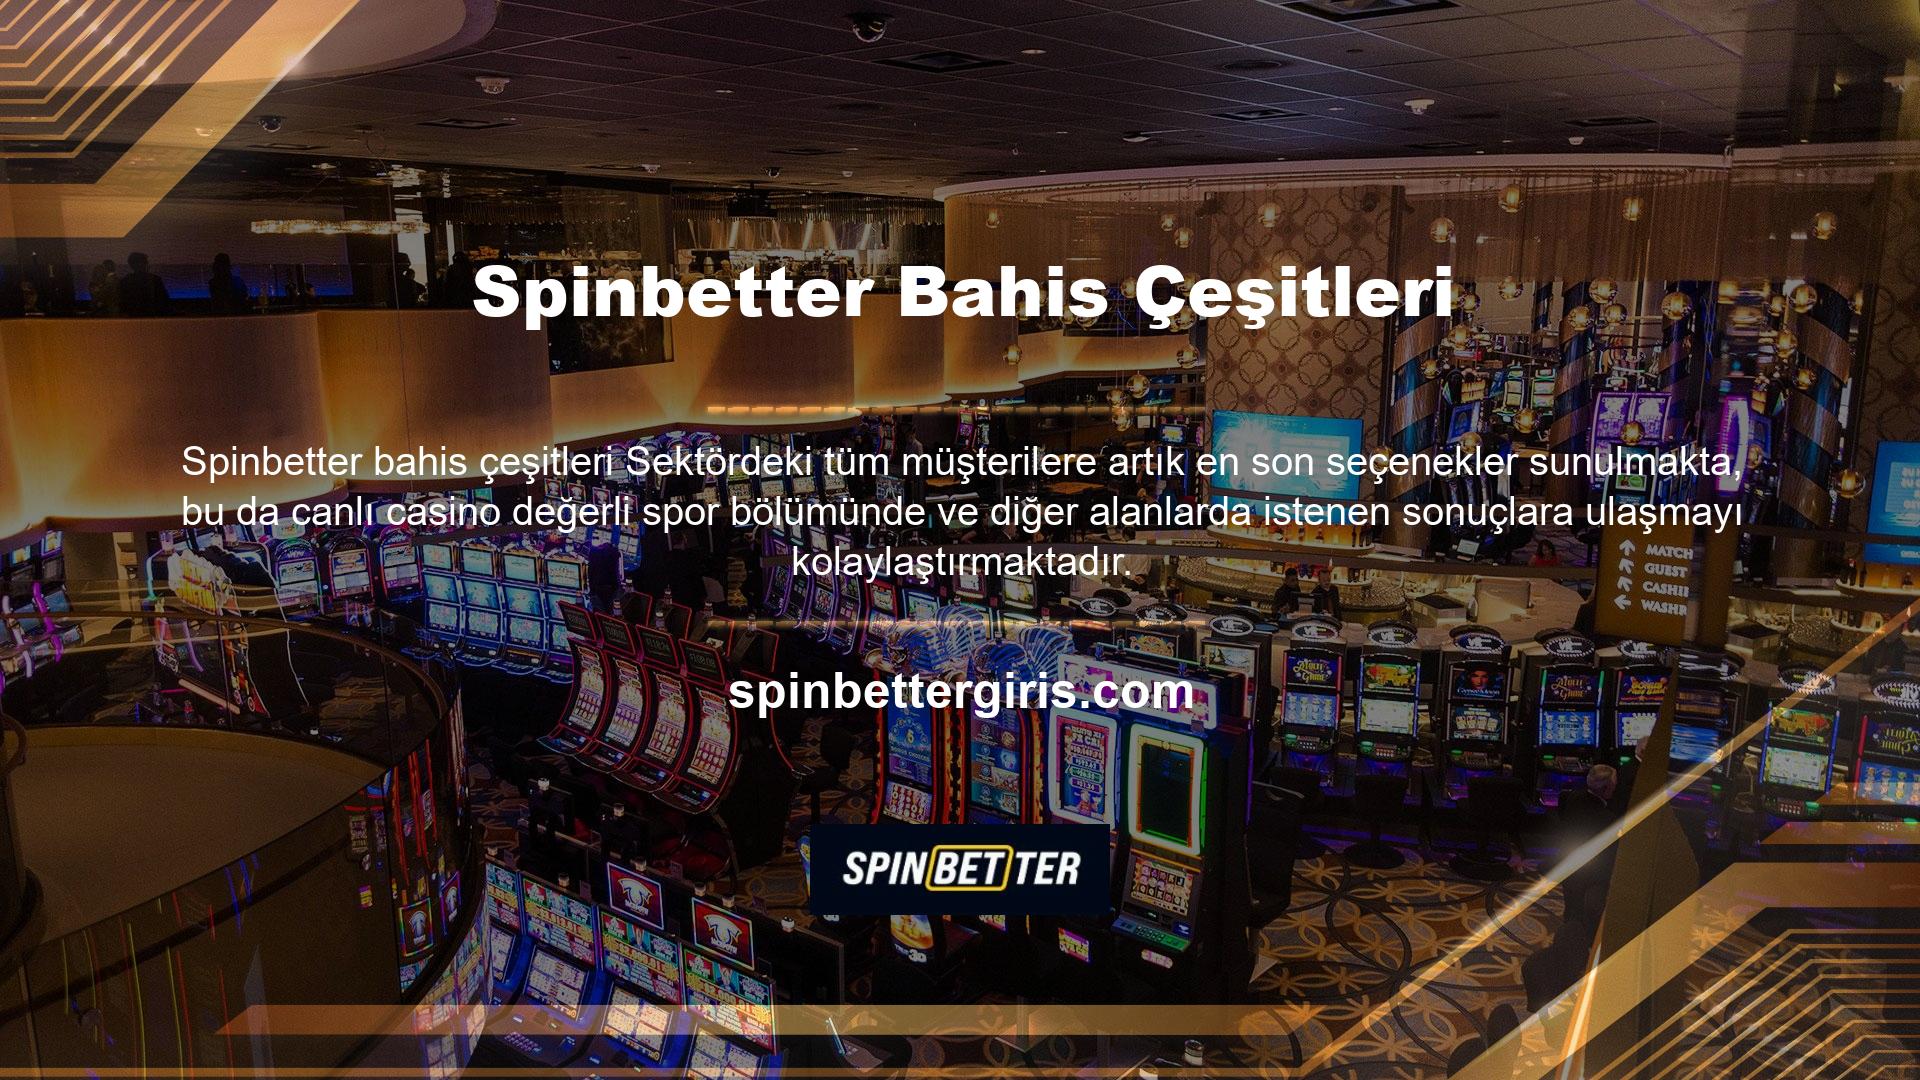 Spinbetter bu sezon spor bahisleri sayesinde canlı casino oyunlara ve güncellenmiş kurum seçeneklerine artık herkes erişebilir